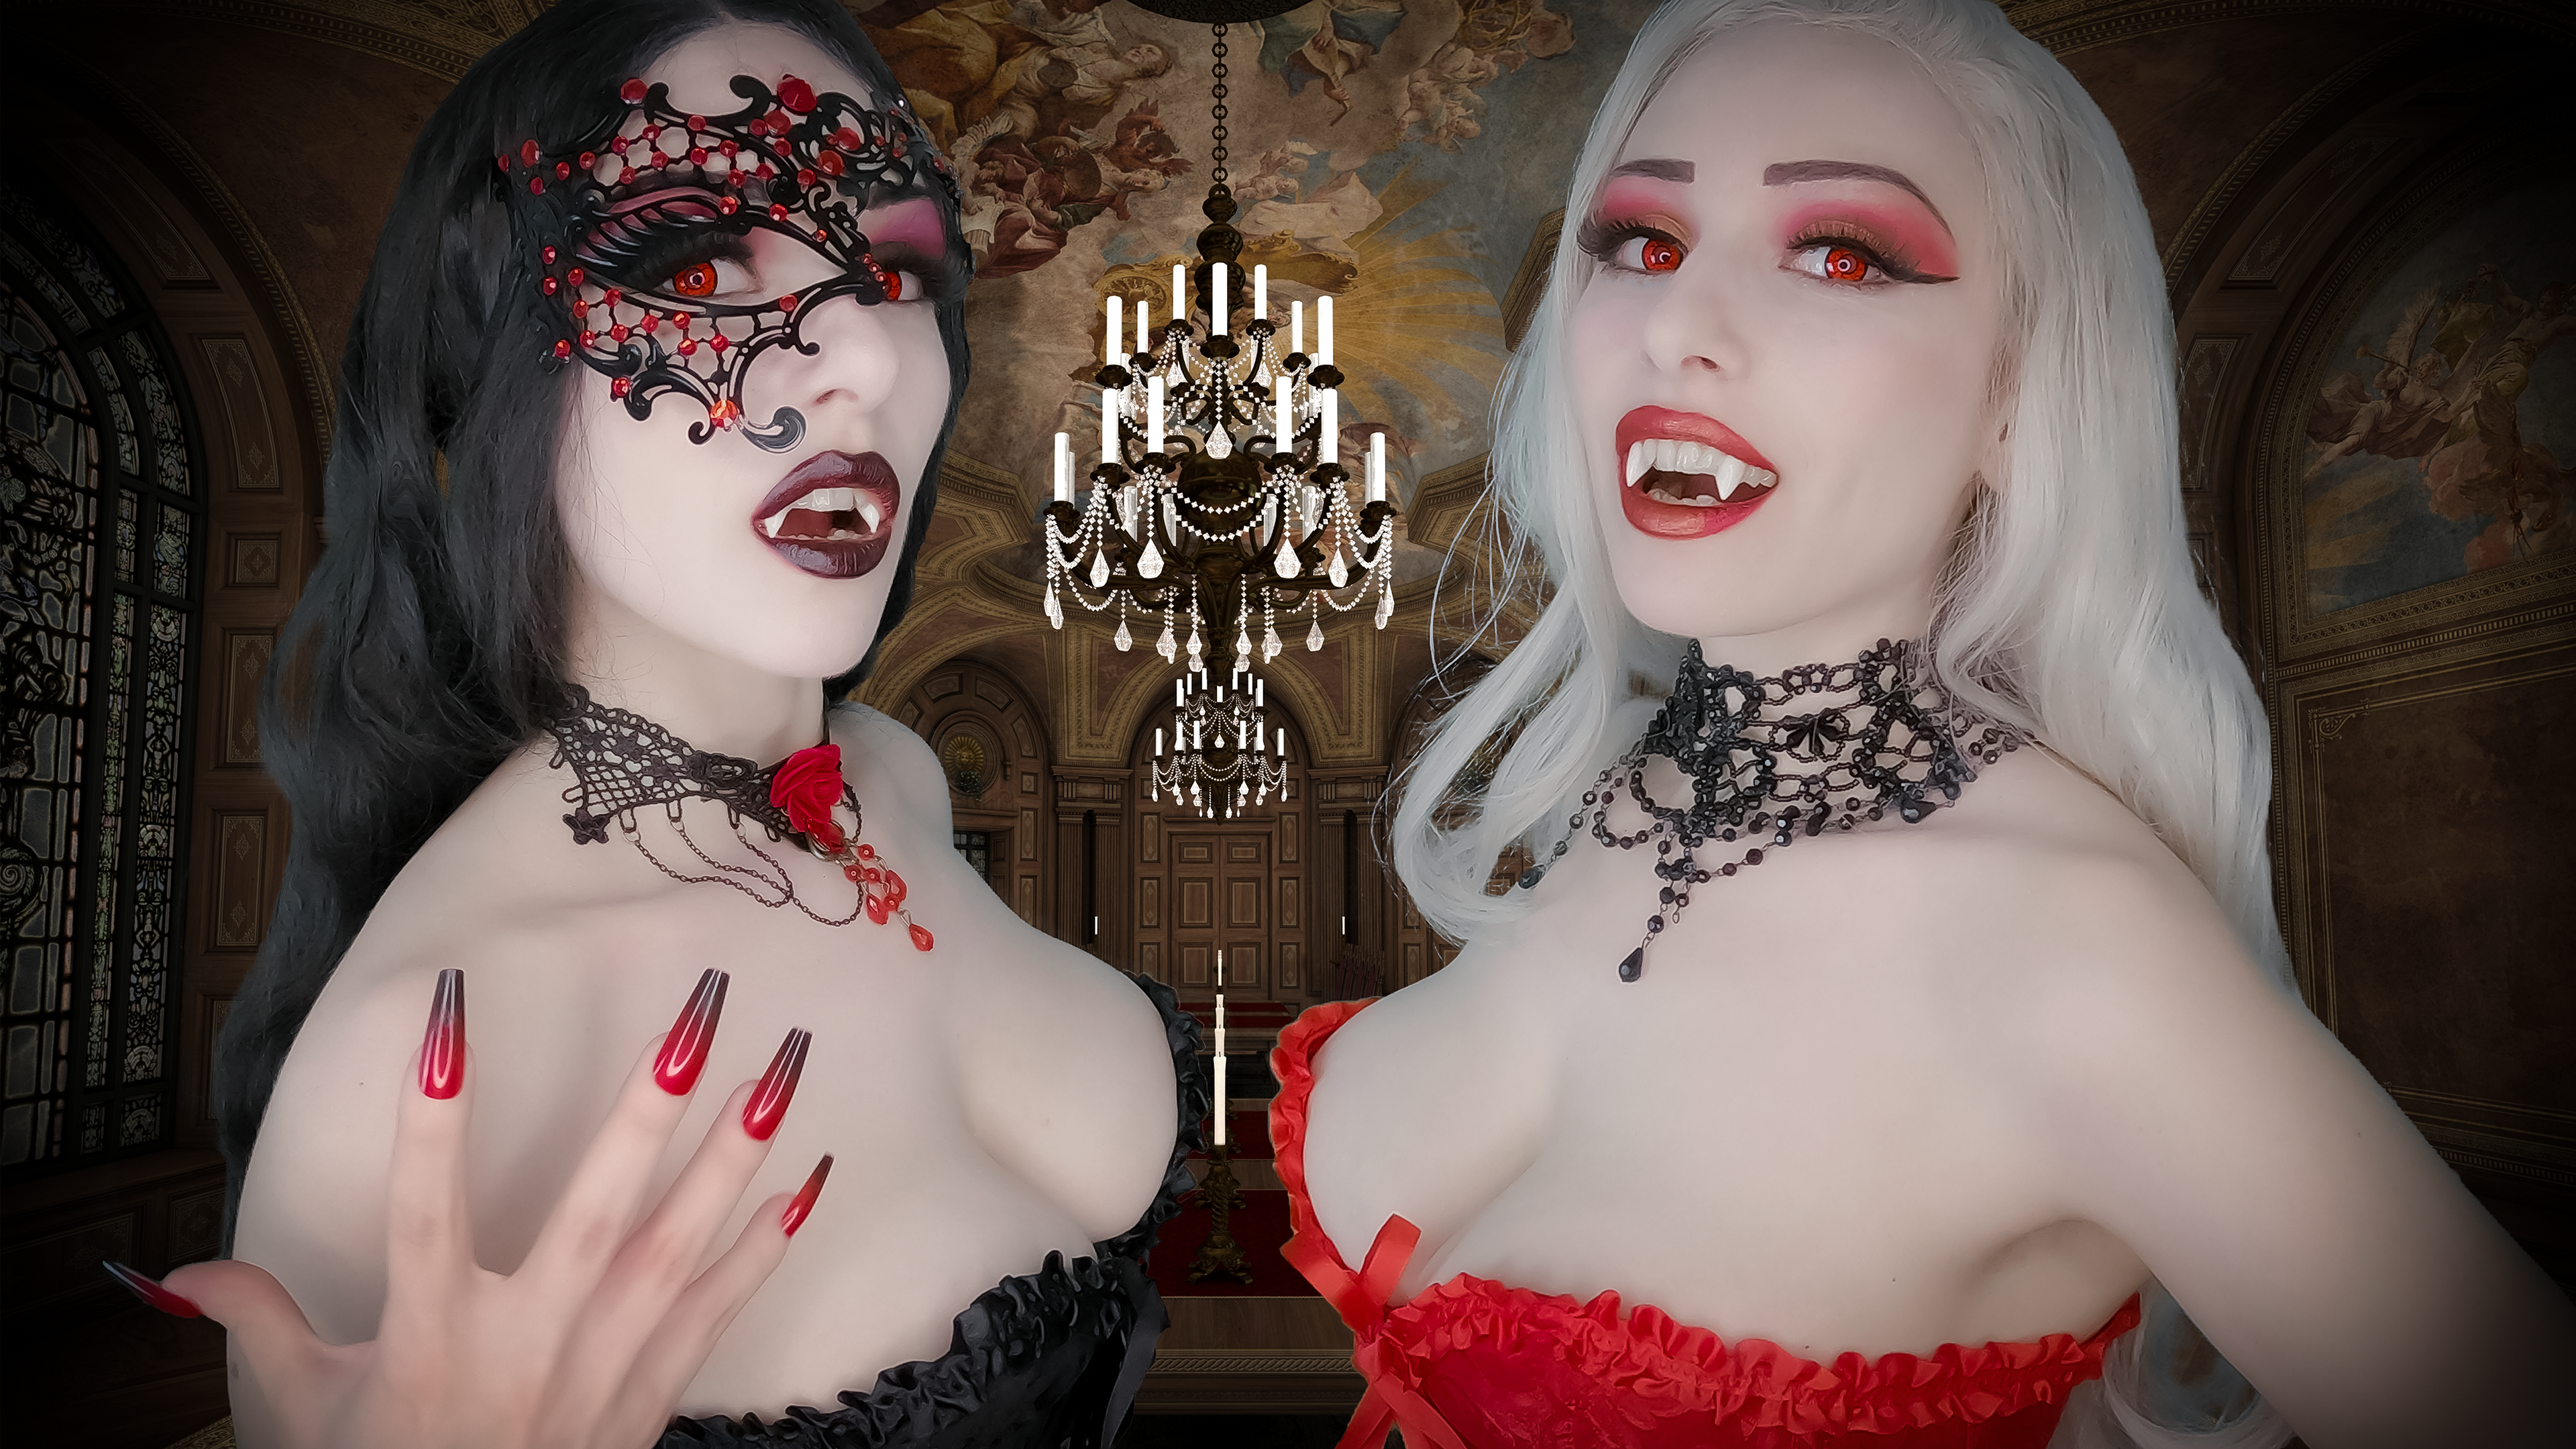 wallpaper-vampire-sisters-3840-x-2160-deskopt.png